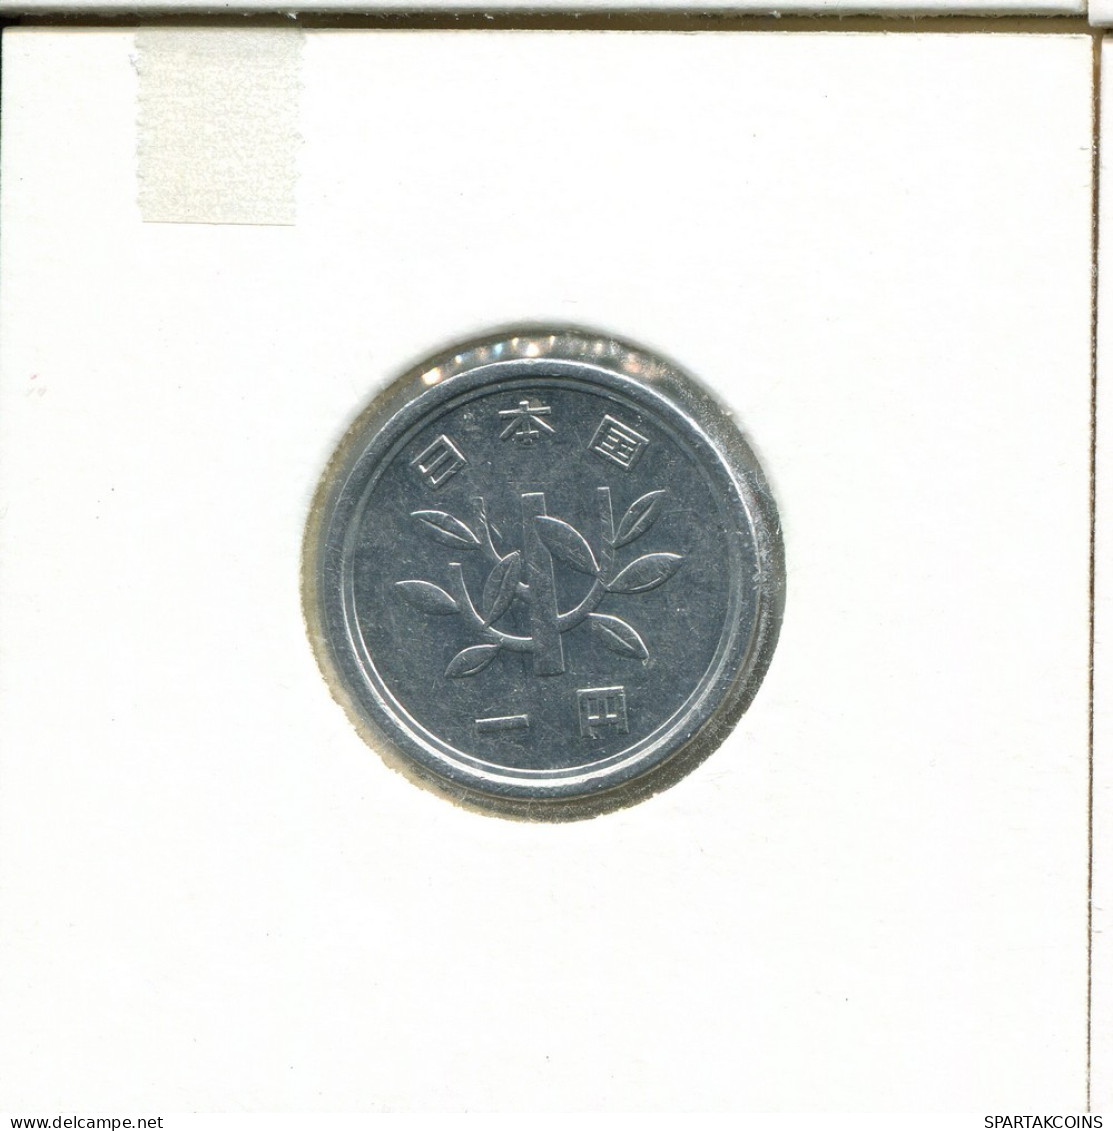 1 YEN 1990-2018 JAPAN Coin #AS059.U.A - Japón